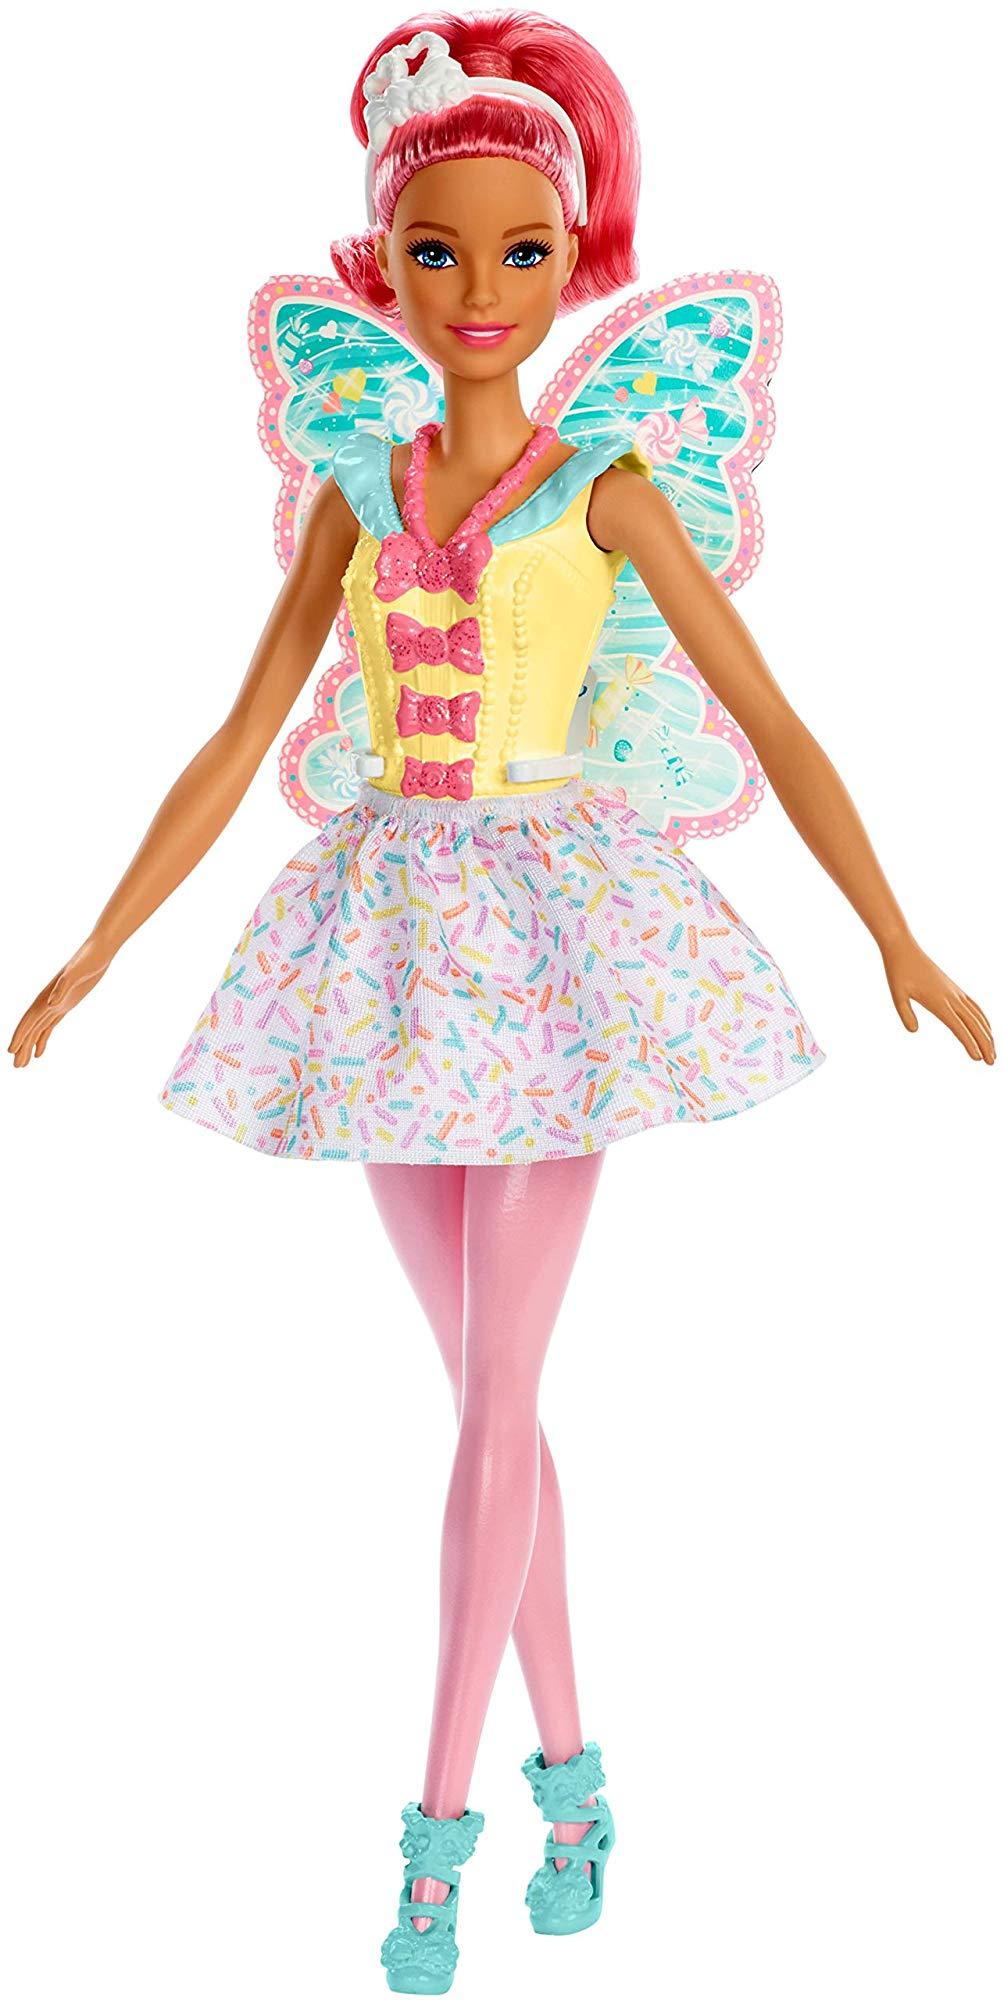 Кукла Barbie Dreamtopia Фея кукла barbie из серии секретные агенты тереза и рене dhf06 dhf07